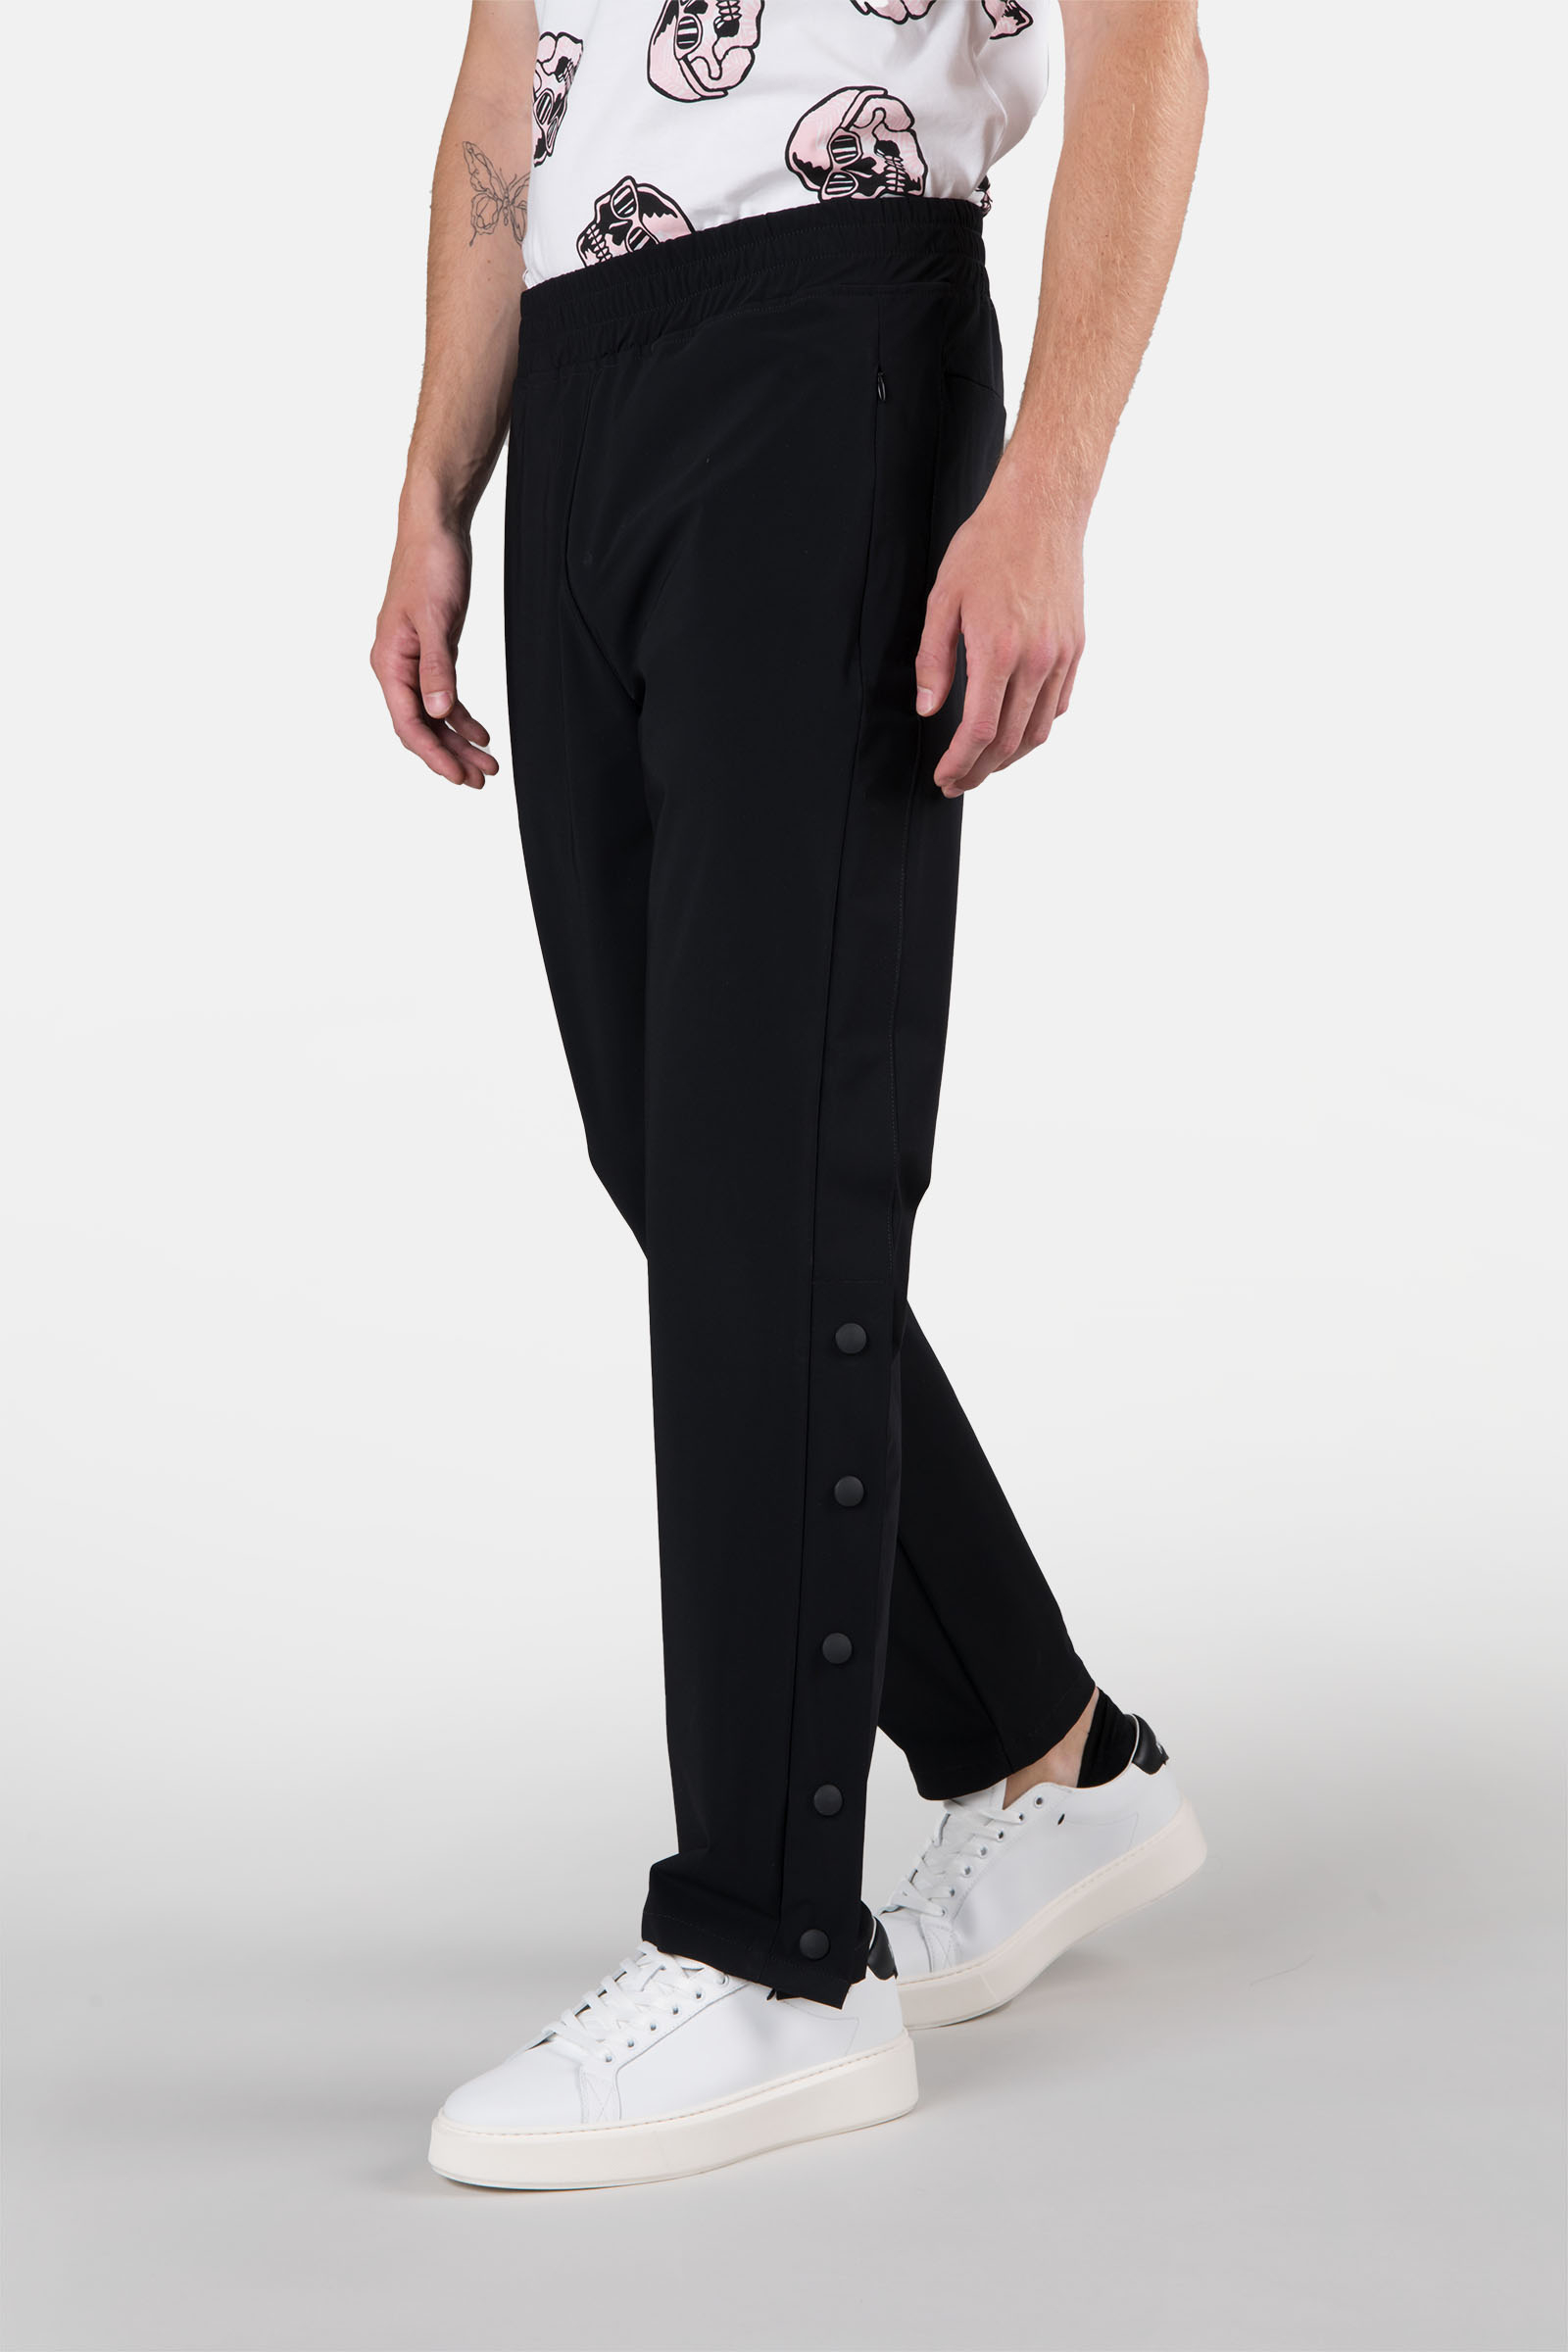 BASKET PANTS - BLACK - Hydrogen - Luxury Sportwear